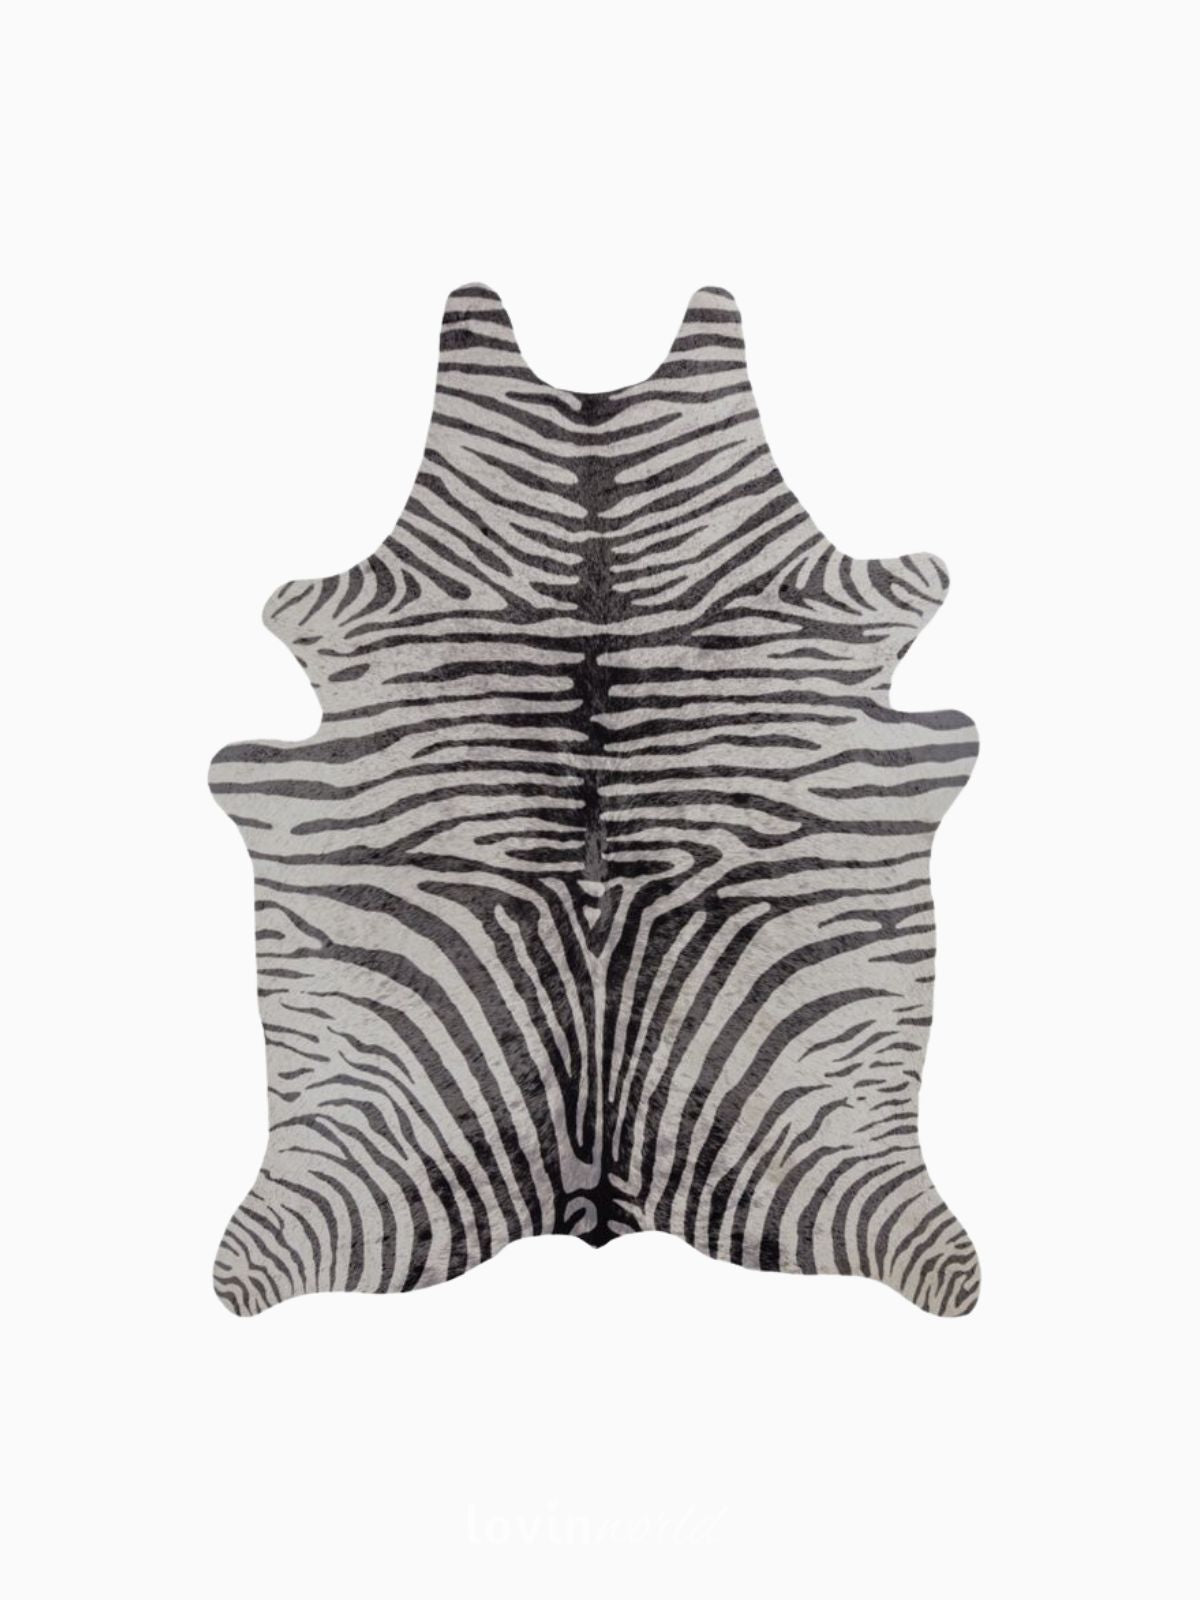 Tappeto animale Zebra Print in poliestere, colore bianco e nero 155x195 cm.-1